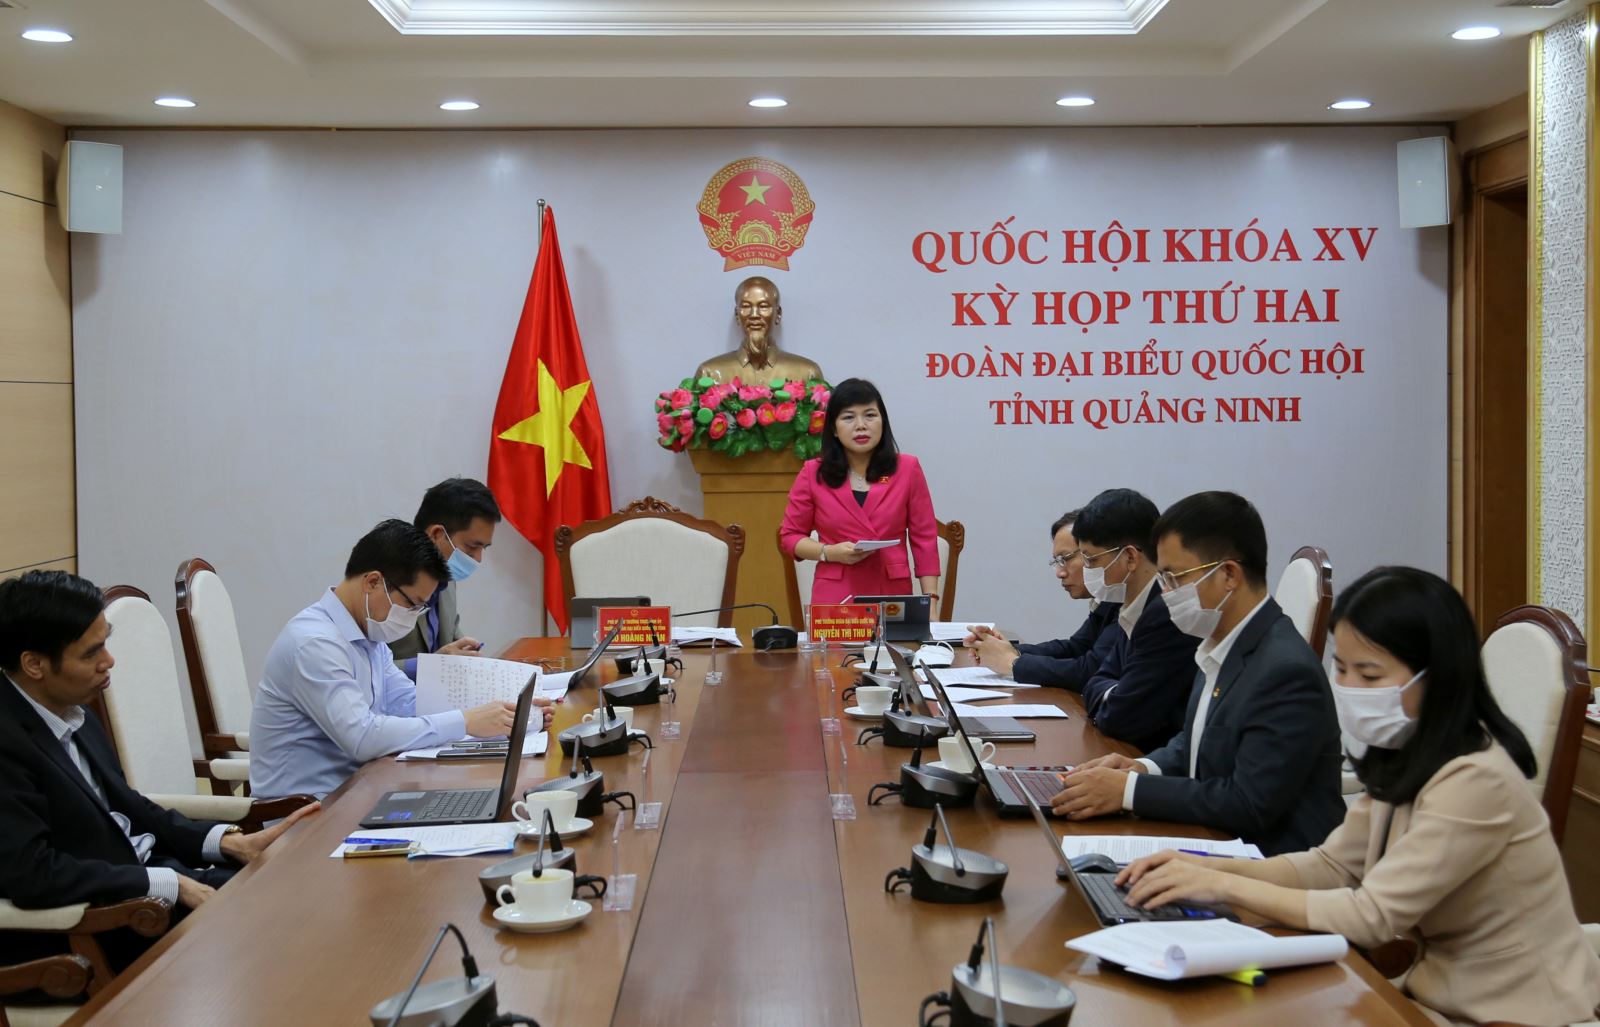 Phó trưởng Đoàn ĐBQH tỉnh Quảng Ninh Nguyễn Thị Thu Hà phát biểu thảo luận tại điểm cầu tỉnh